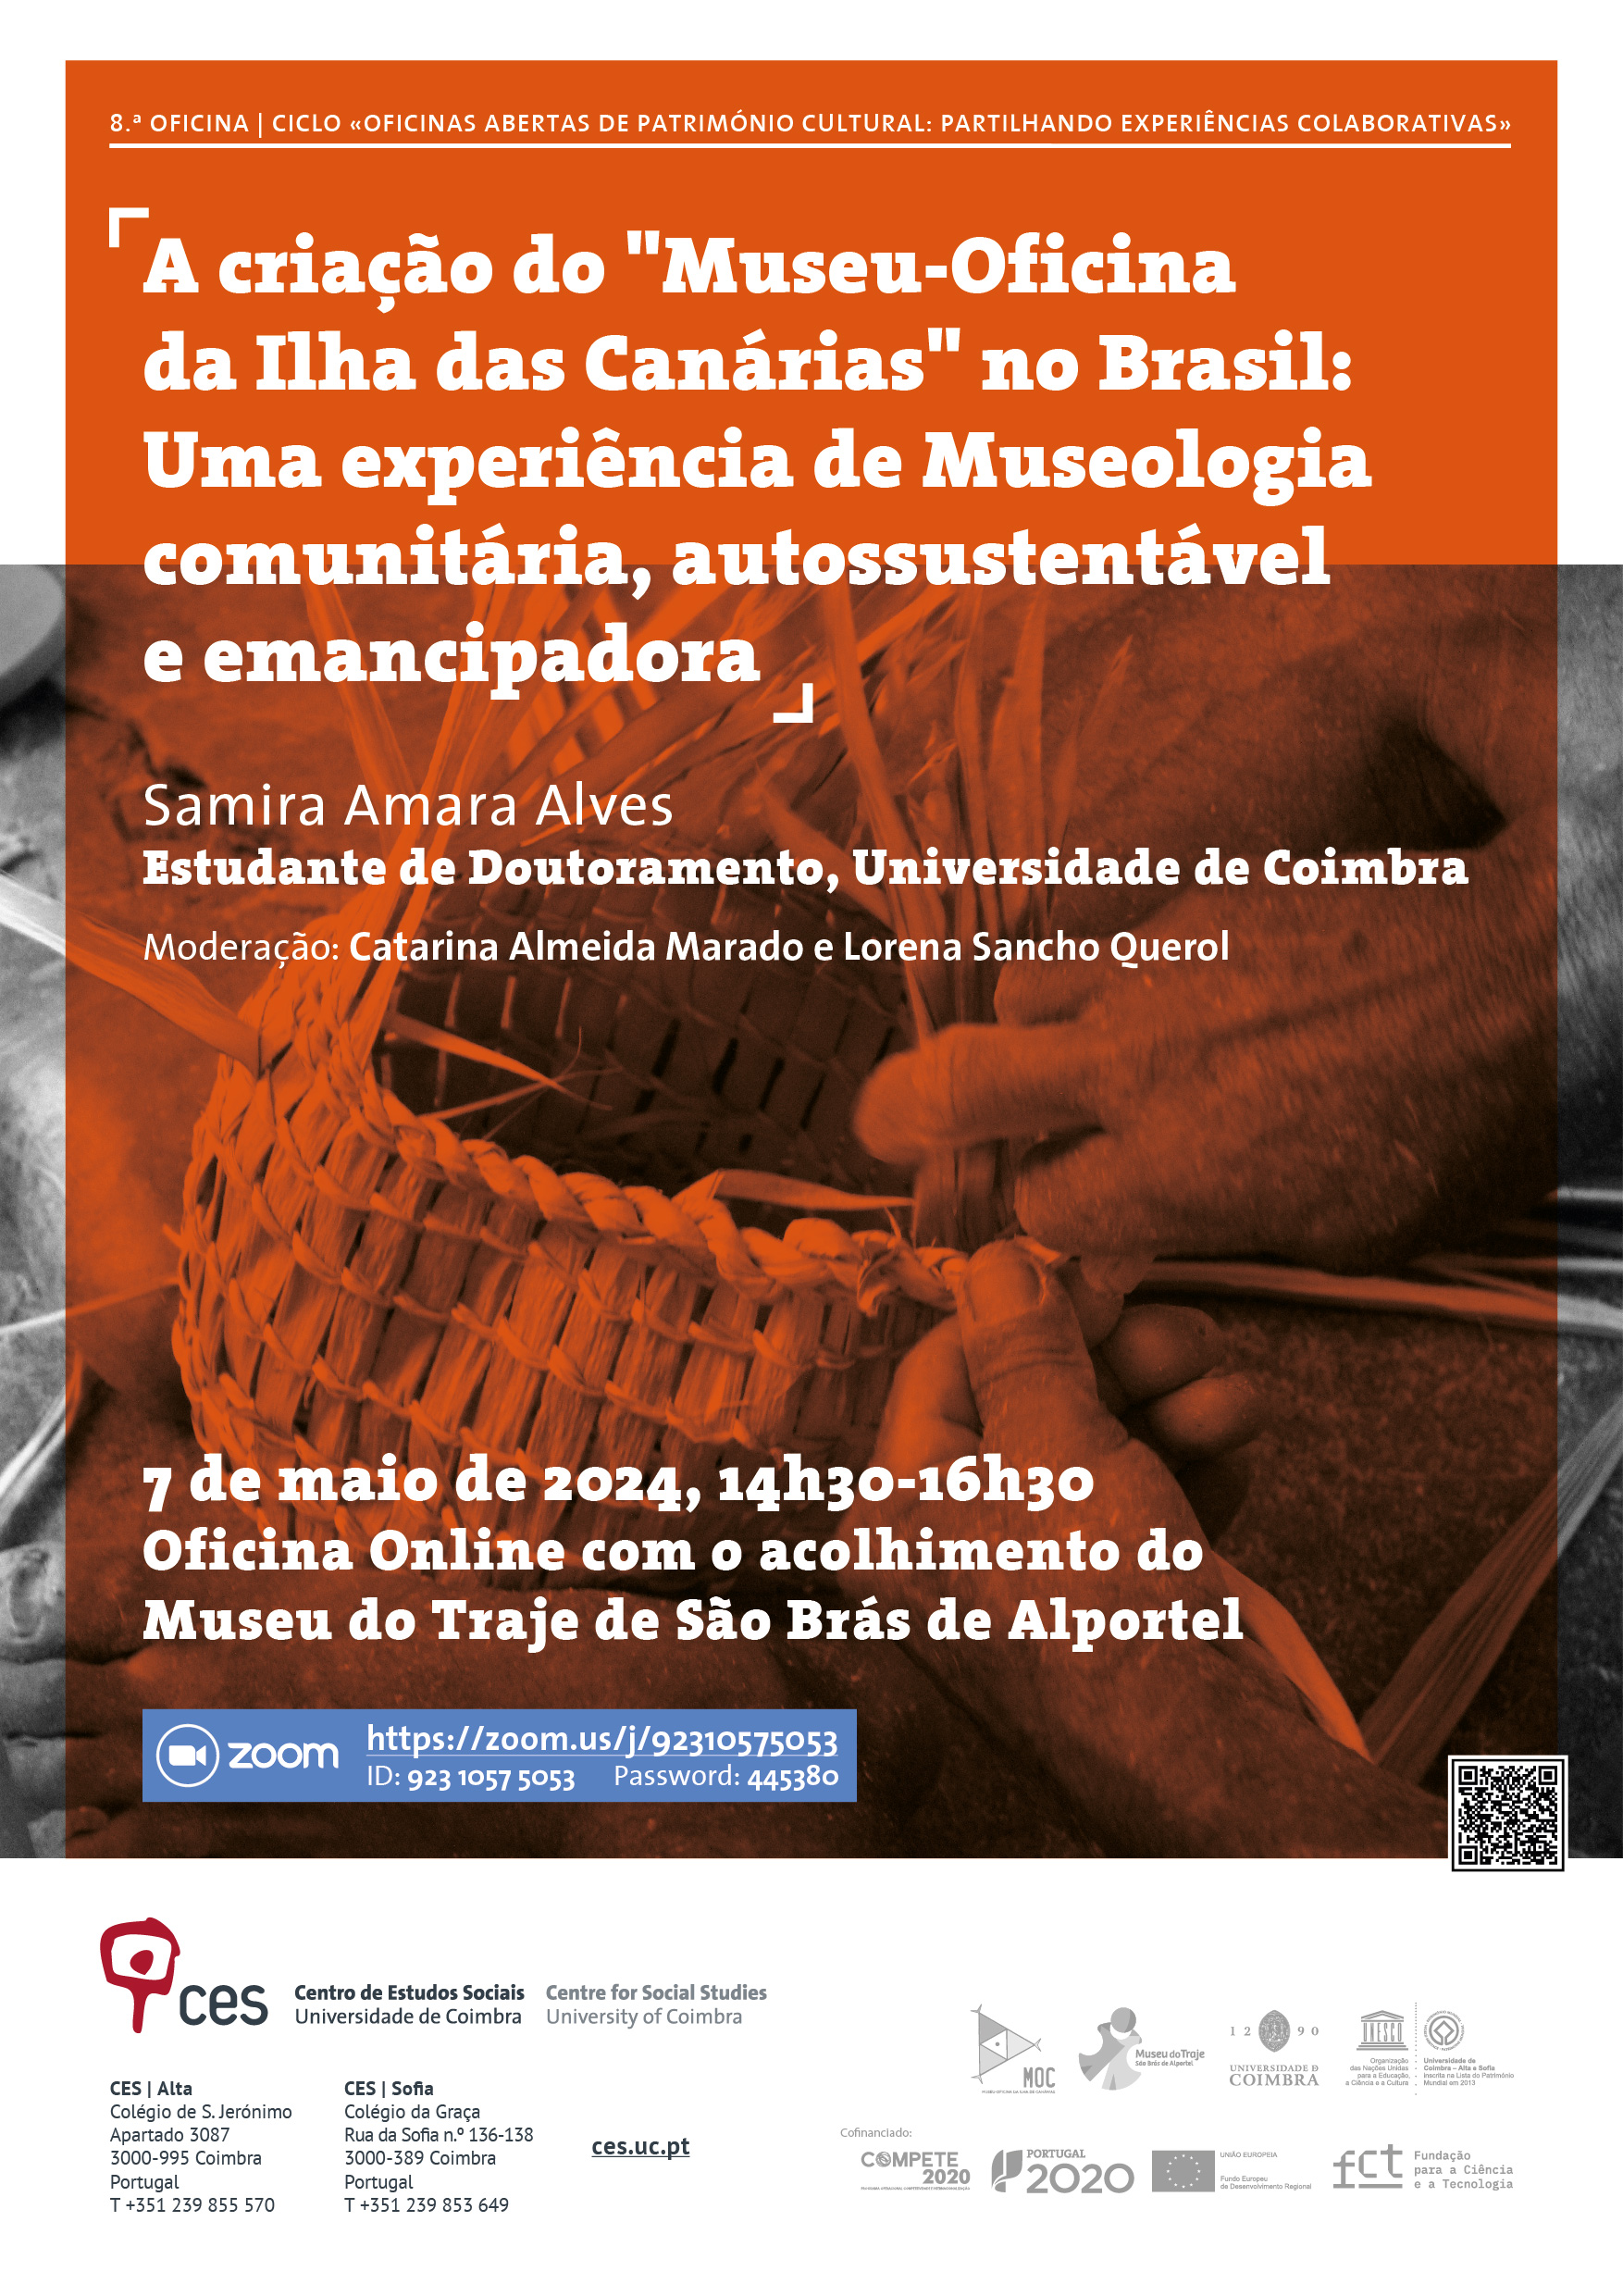 8.ª OFICINA | A criação do "Museu-Oficina da Ilha das Canárias" no Brasil: Uma experiência de Museologia comunitária, autossustentável e emancipadora<span id="edit_45640"><script>$(function() { $('#edit_45640').load( "/myces/user/editobj.php?tipo=evento&id=45640" ); });</script></span>